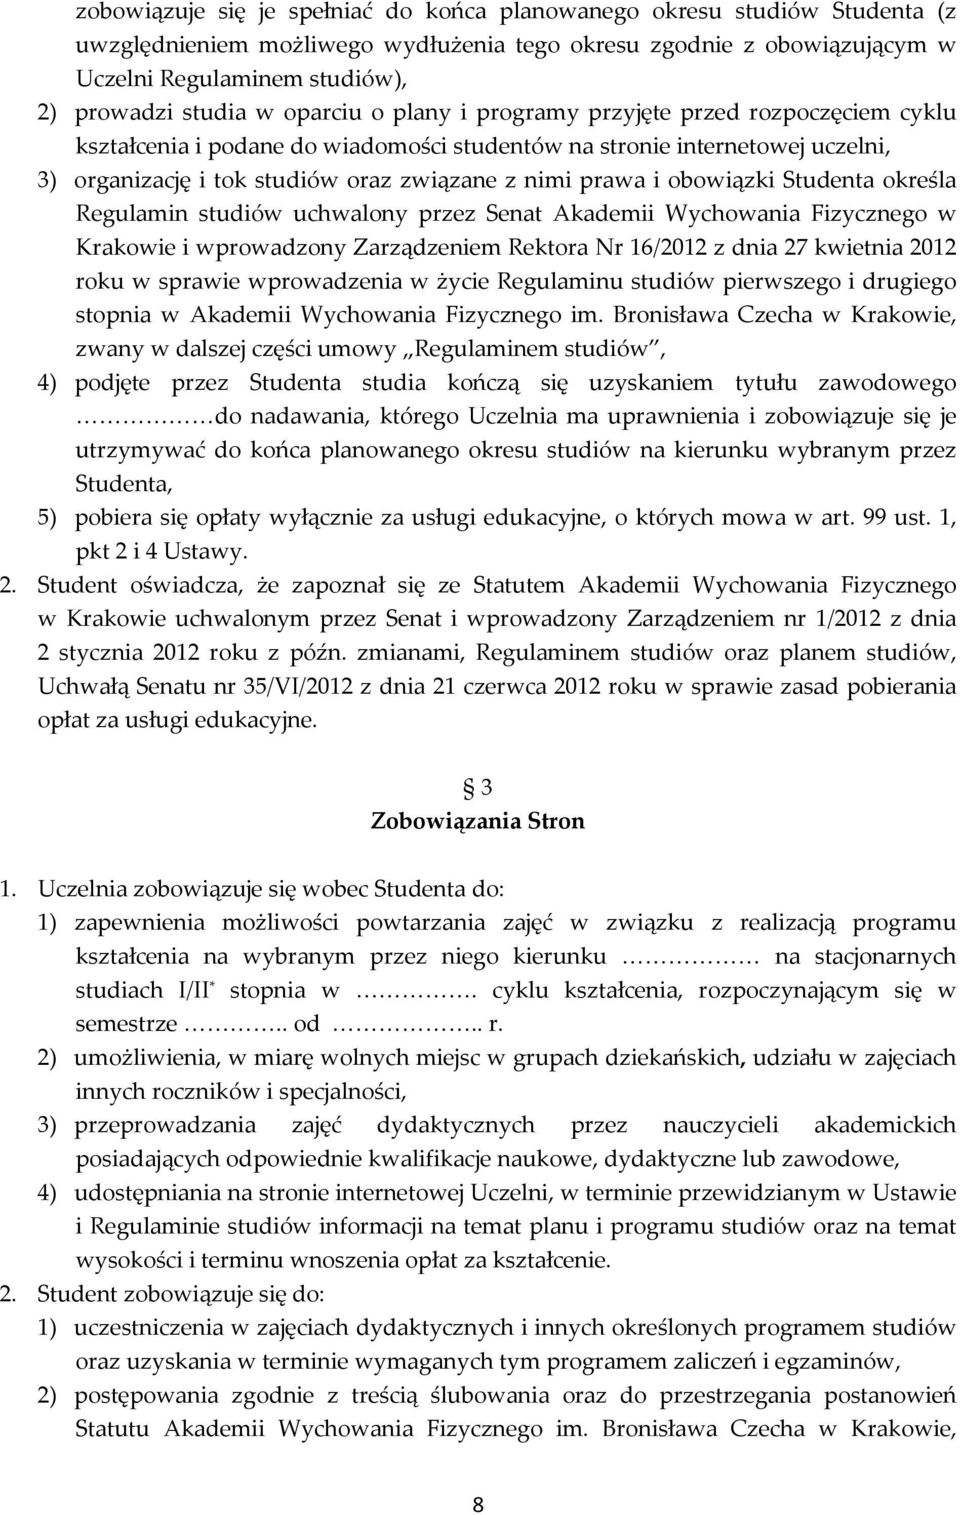 obowiązki Studenta określa Regulamin studiów uchwalony przez Senat Akademii Wychowania Fizycznego w Krakowie i wprowadzony Zarządzeniem Rektora Nr 16/2012 z dnia 27 kwietnia 2012 roku w sprawie